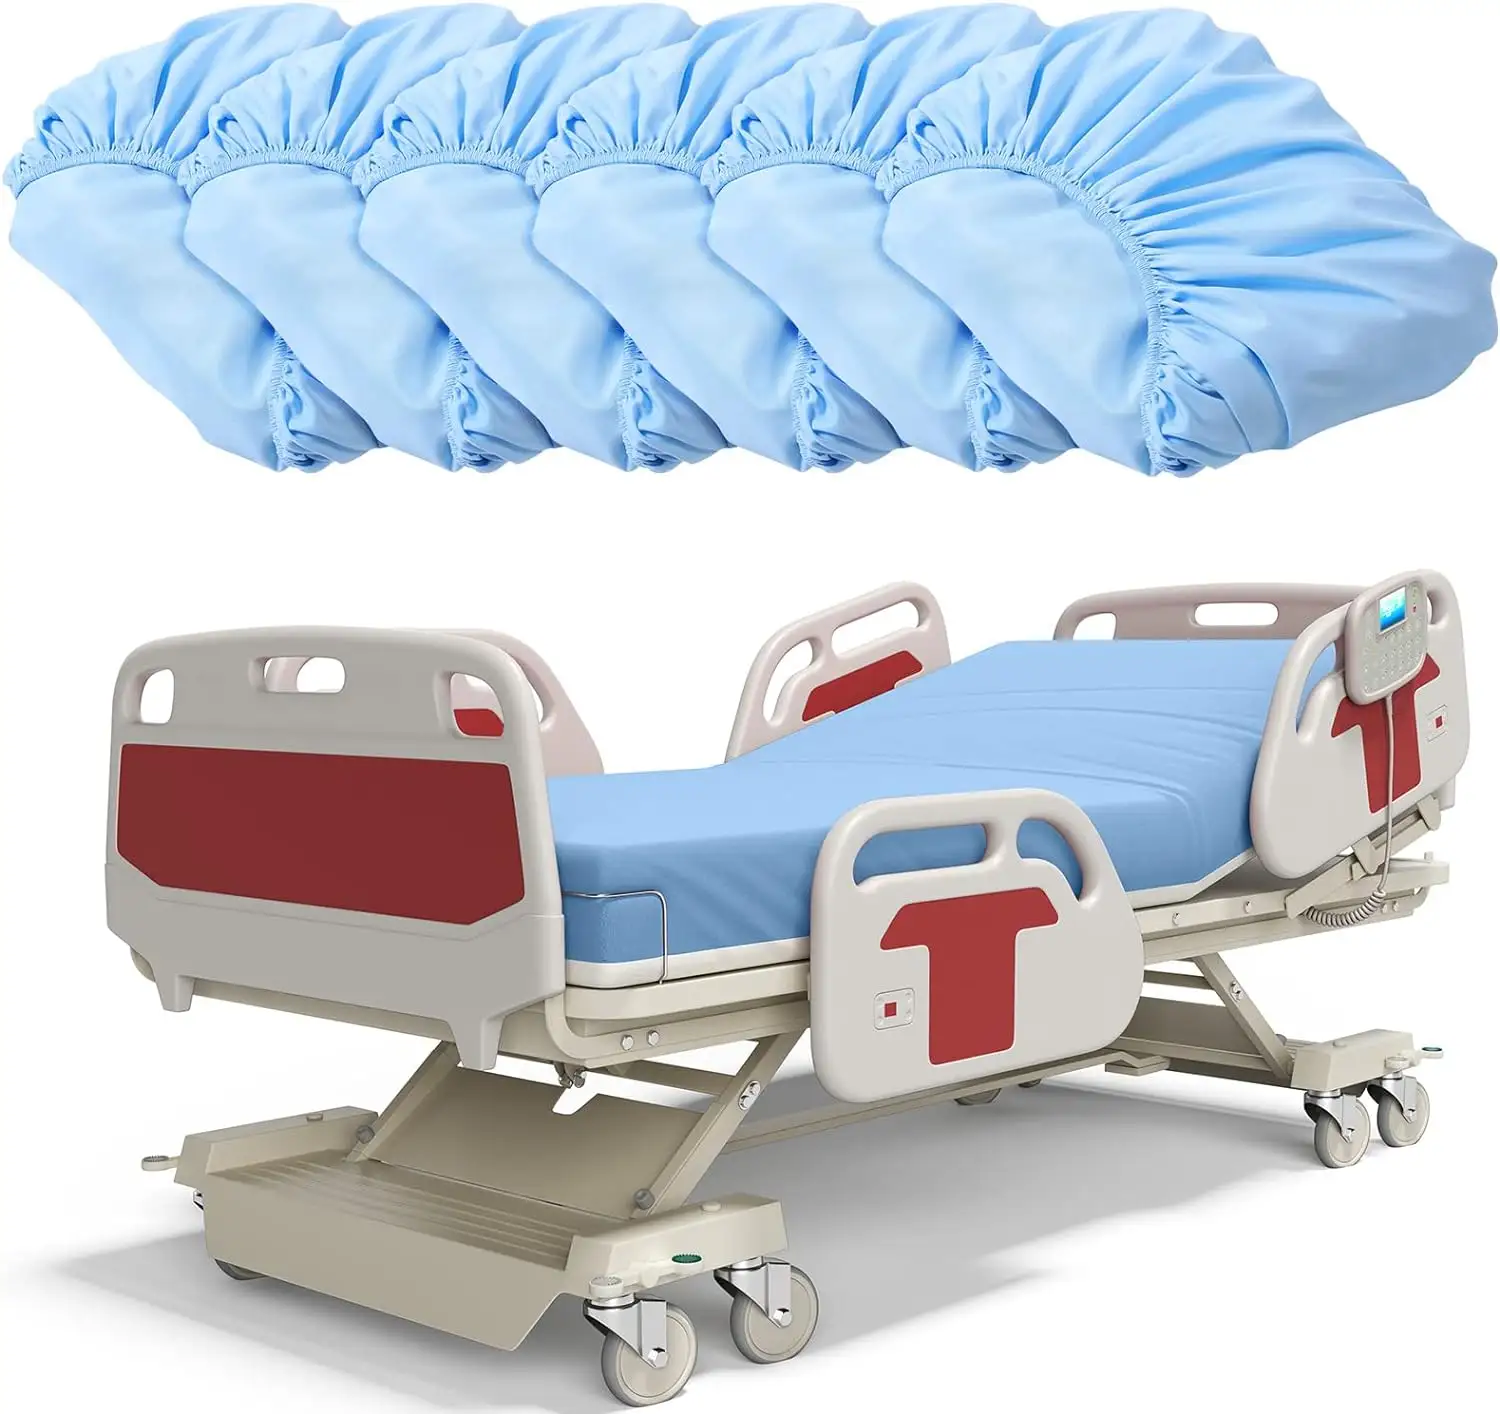 6 buah sprei Rumah Sakit mikrofiber disikat, sarung bantal dan penutup bantal elastis untuk perawatan mudah